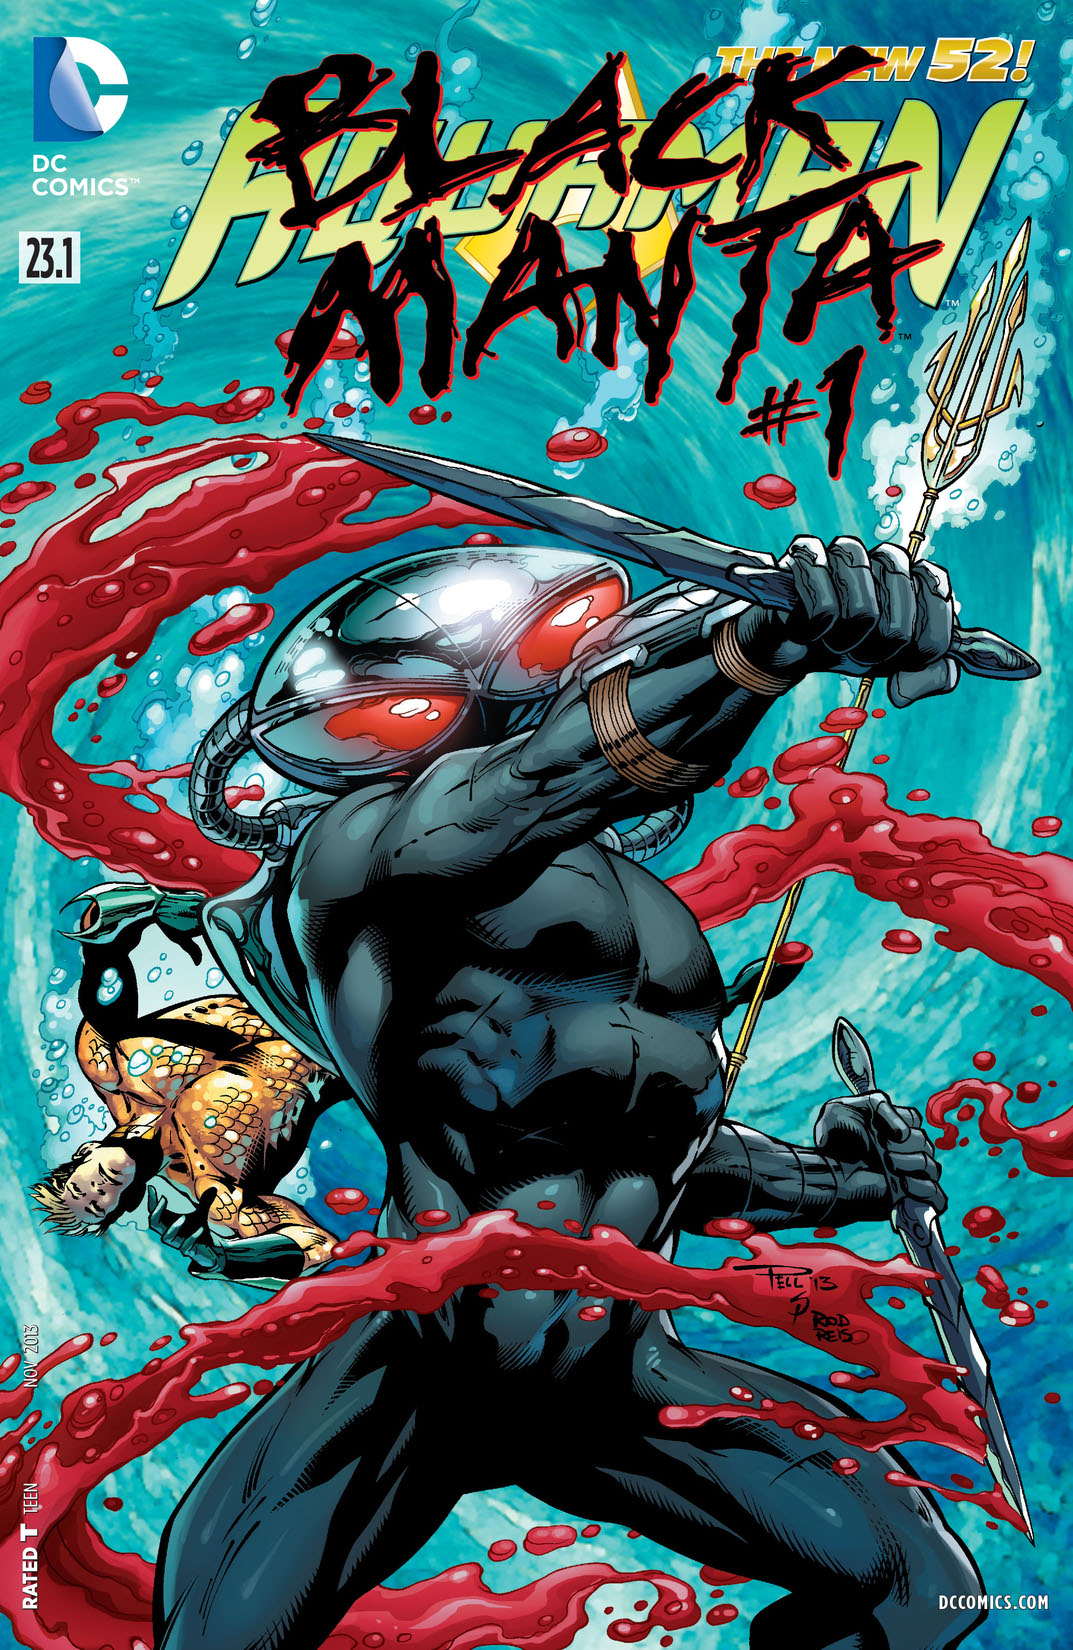 Aquaman feat Black Manta (2013-) #23.1 preview images